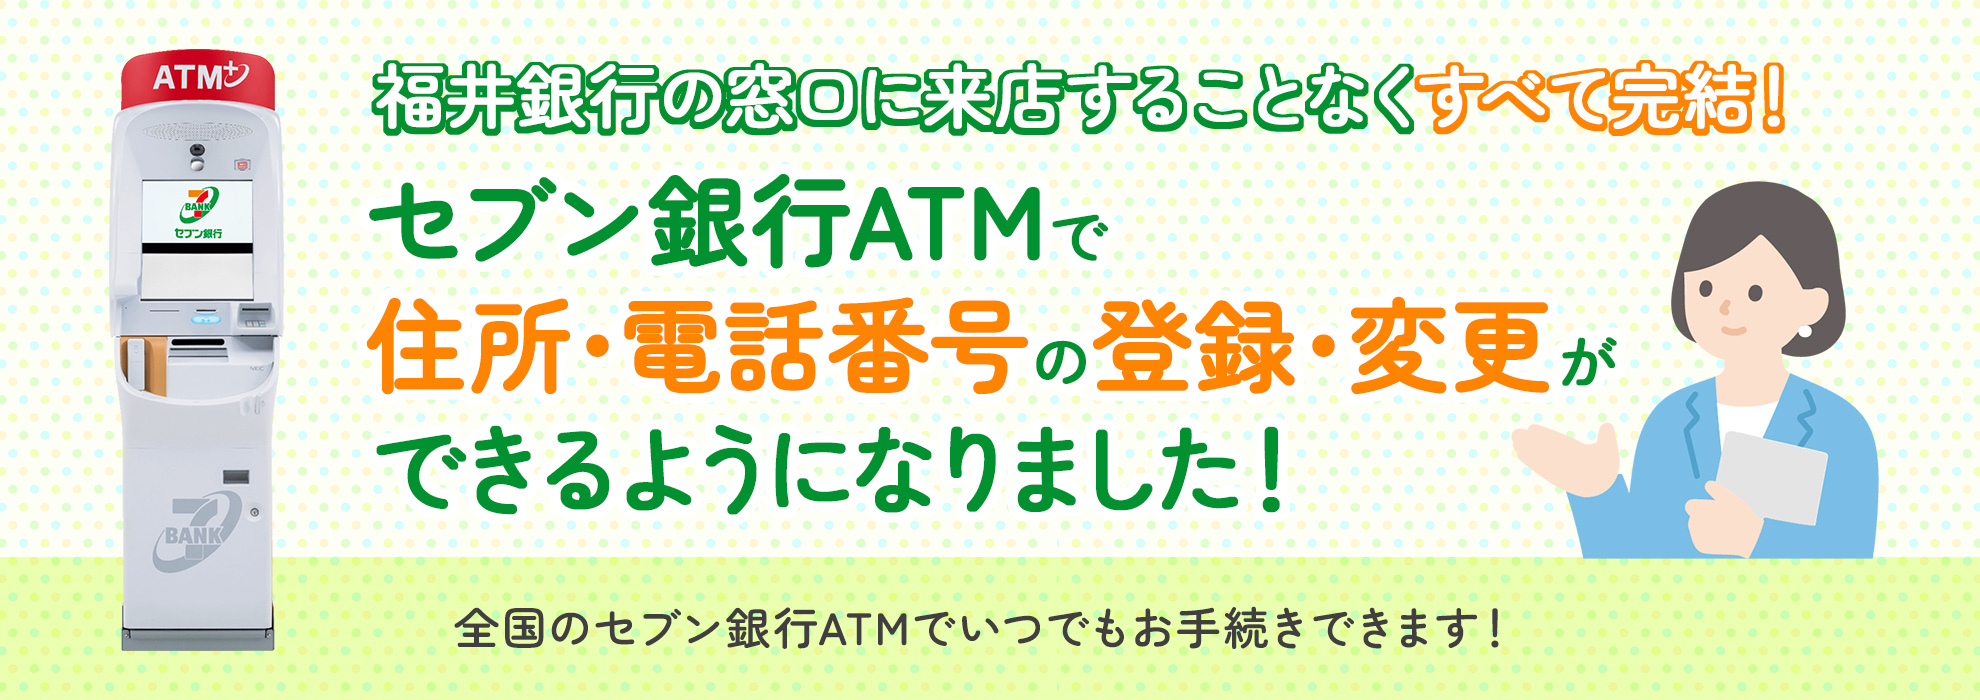 セブン銀行「ATM窓口」サービス